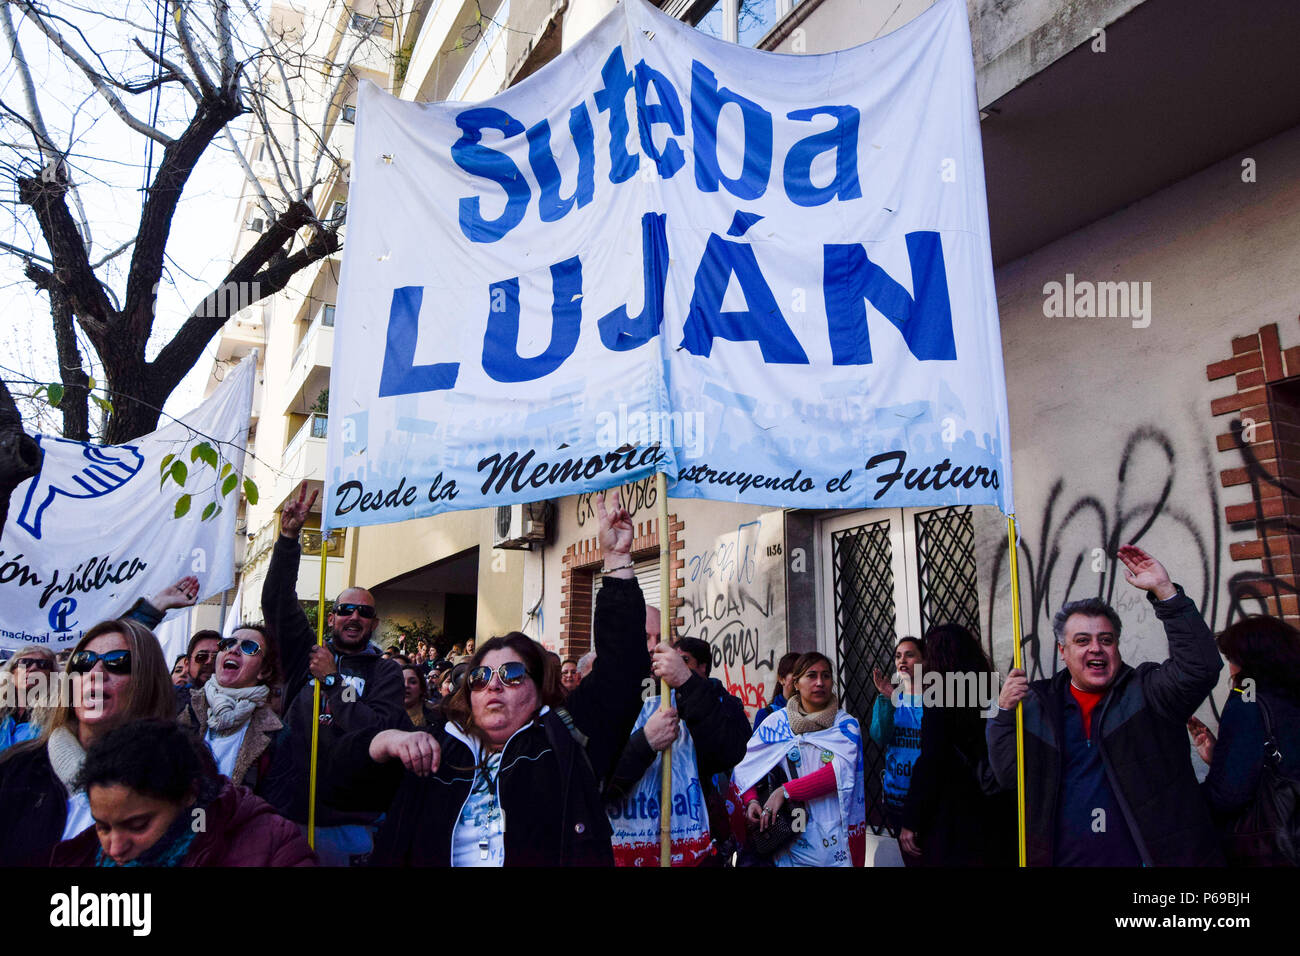 Erzieher für eine Steigerung von 30 % während der Demonstration bitten. Union der Pädagogen aus der Provinz Buenos Aires Protest an das Ministerium für Bildung in La Plata für eine Gehaltserhöhung von 30 % und einer Aufhebung in der Resolution 1736, erfordern sie auch eine Generalstreik von allen Pädagogen während des Protestes. Stockfoto